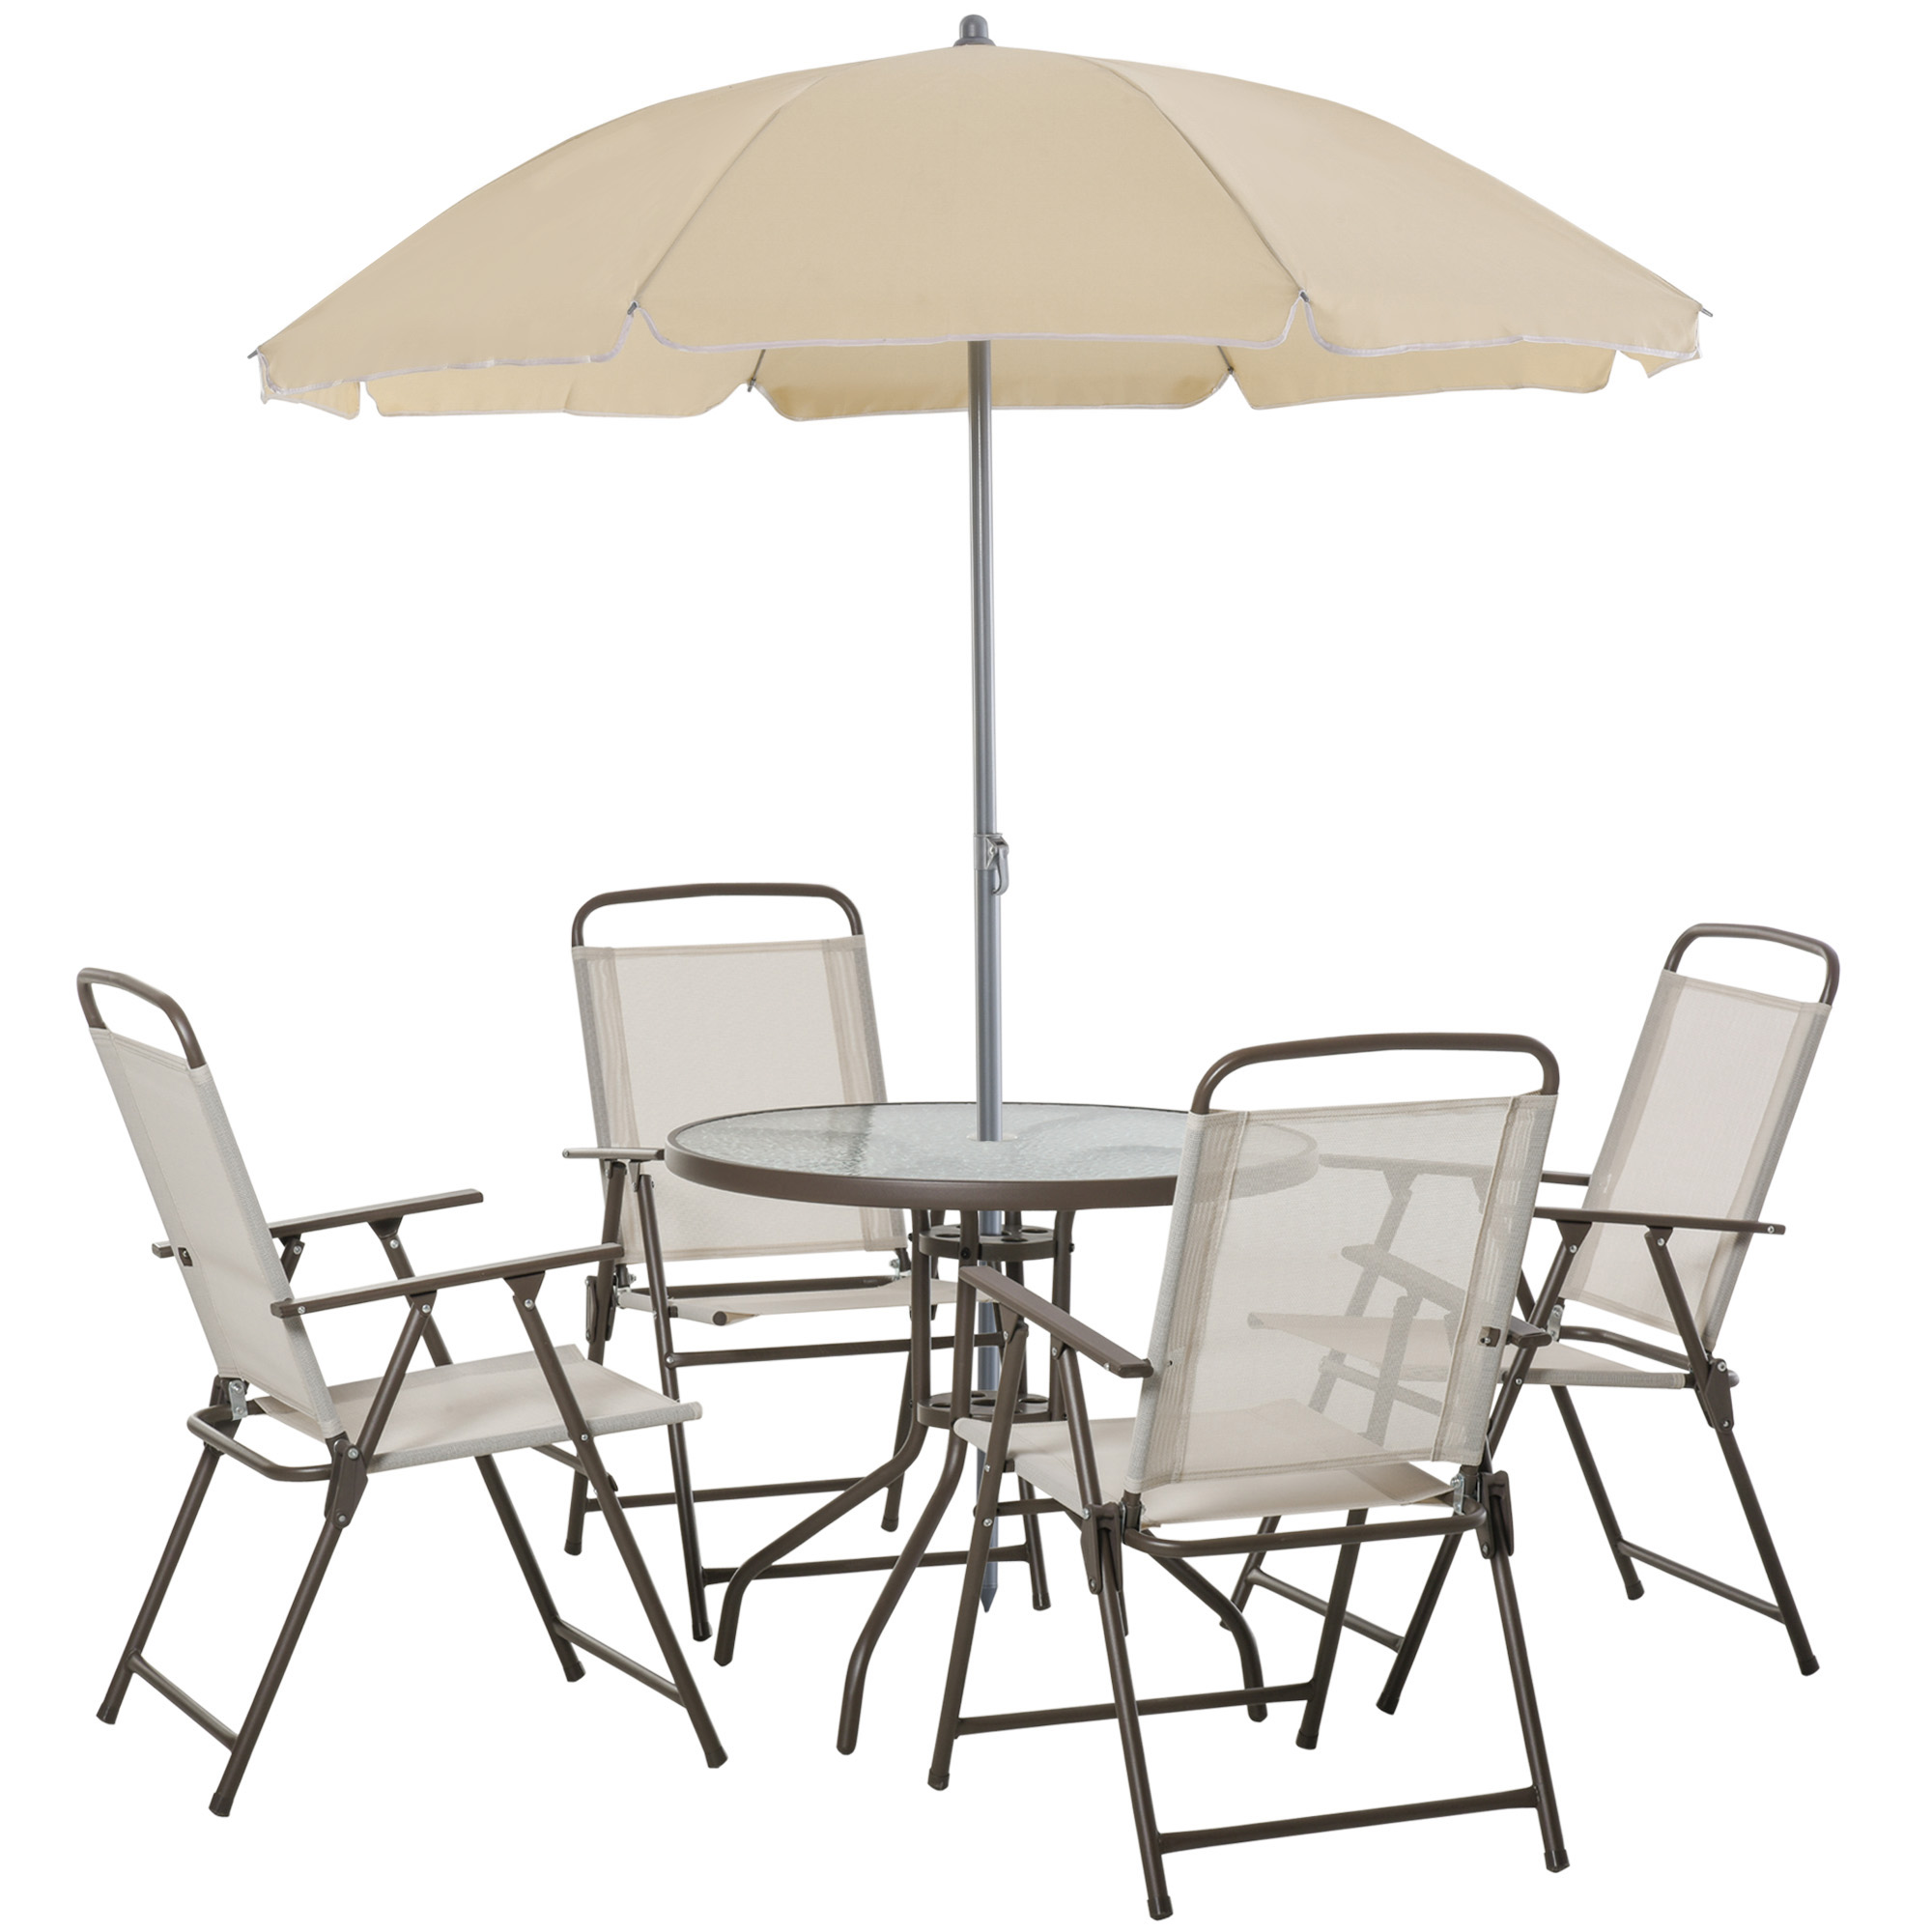 Conjunto de muebles Outsunny para jardín compuesto por 4 sillas, 1 mesa y 1 parasol